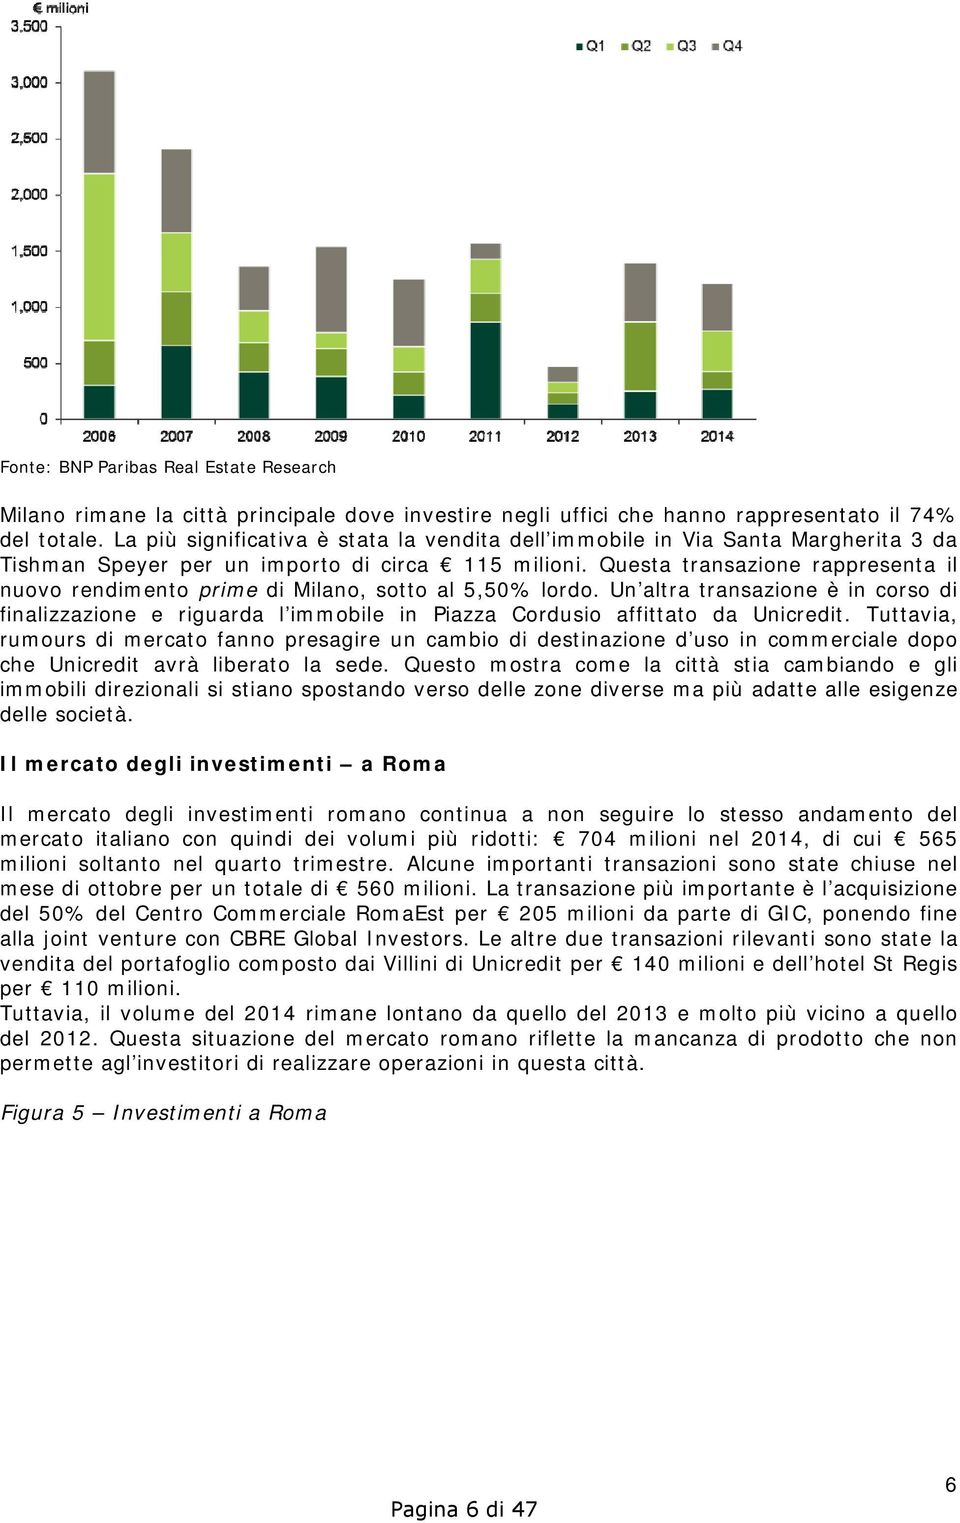 Questa transazione rappresenta il nuovo rendimento prime di Milano, sotto al 5,50% lordo.